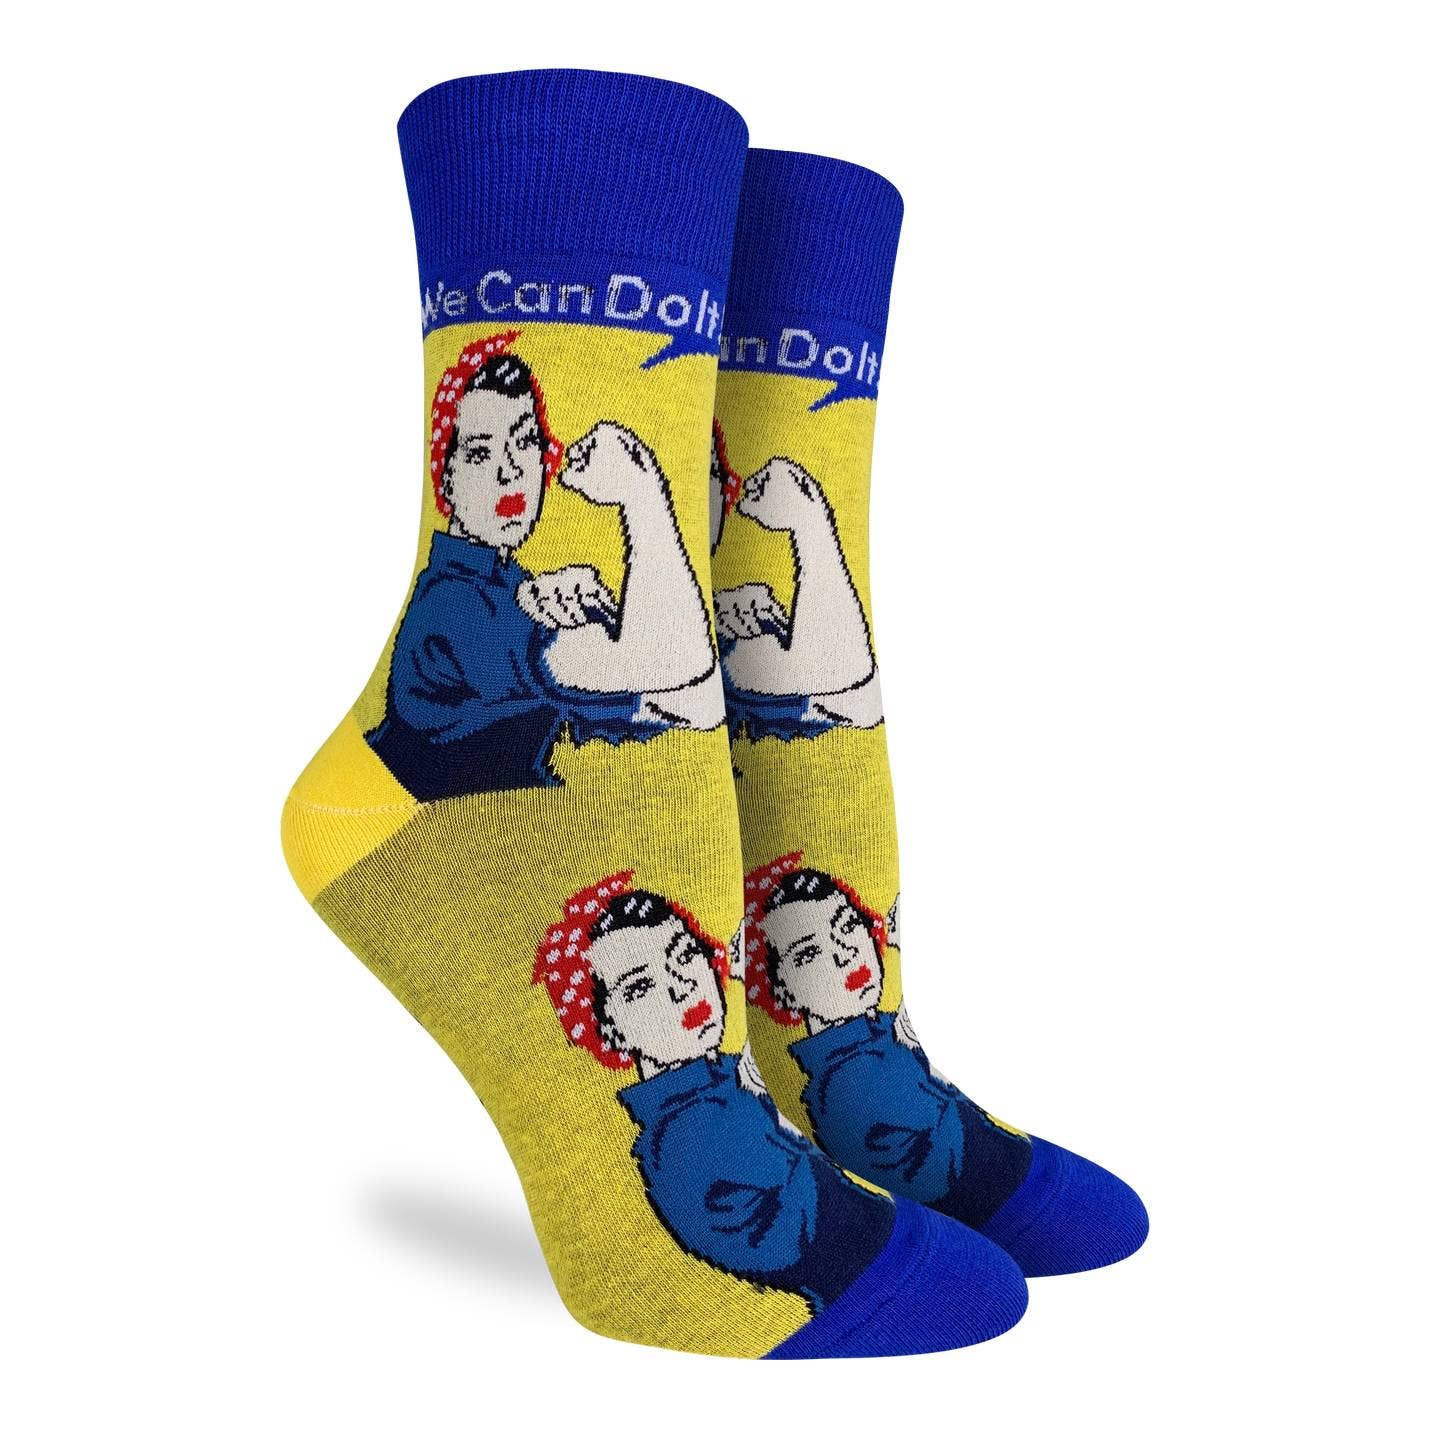 Rosie The Riveter Women's Socks